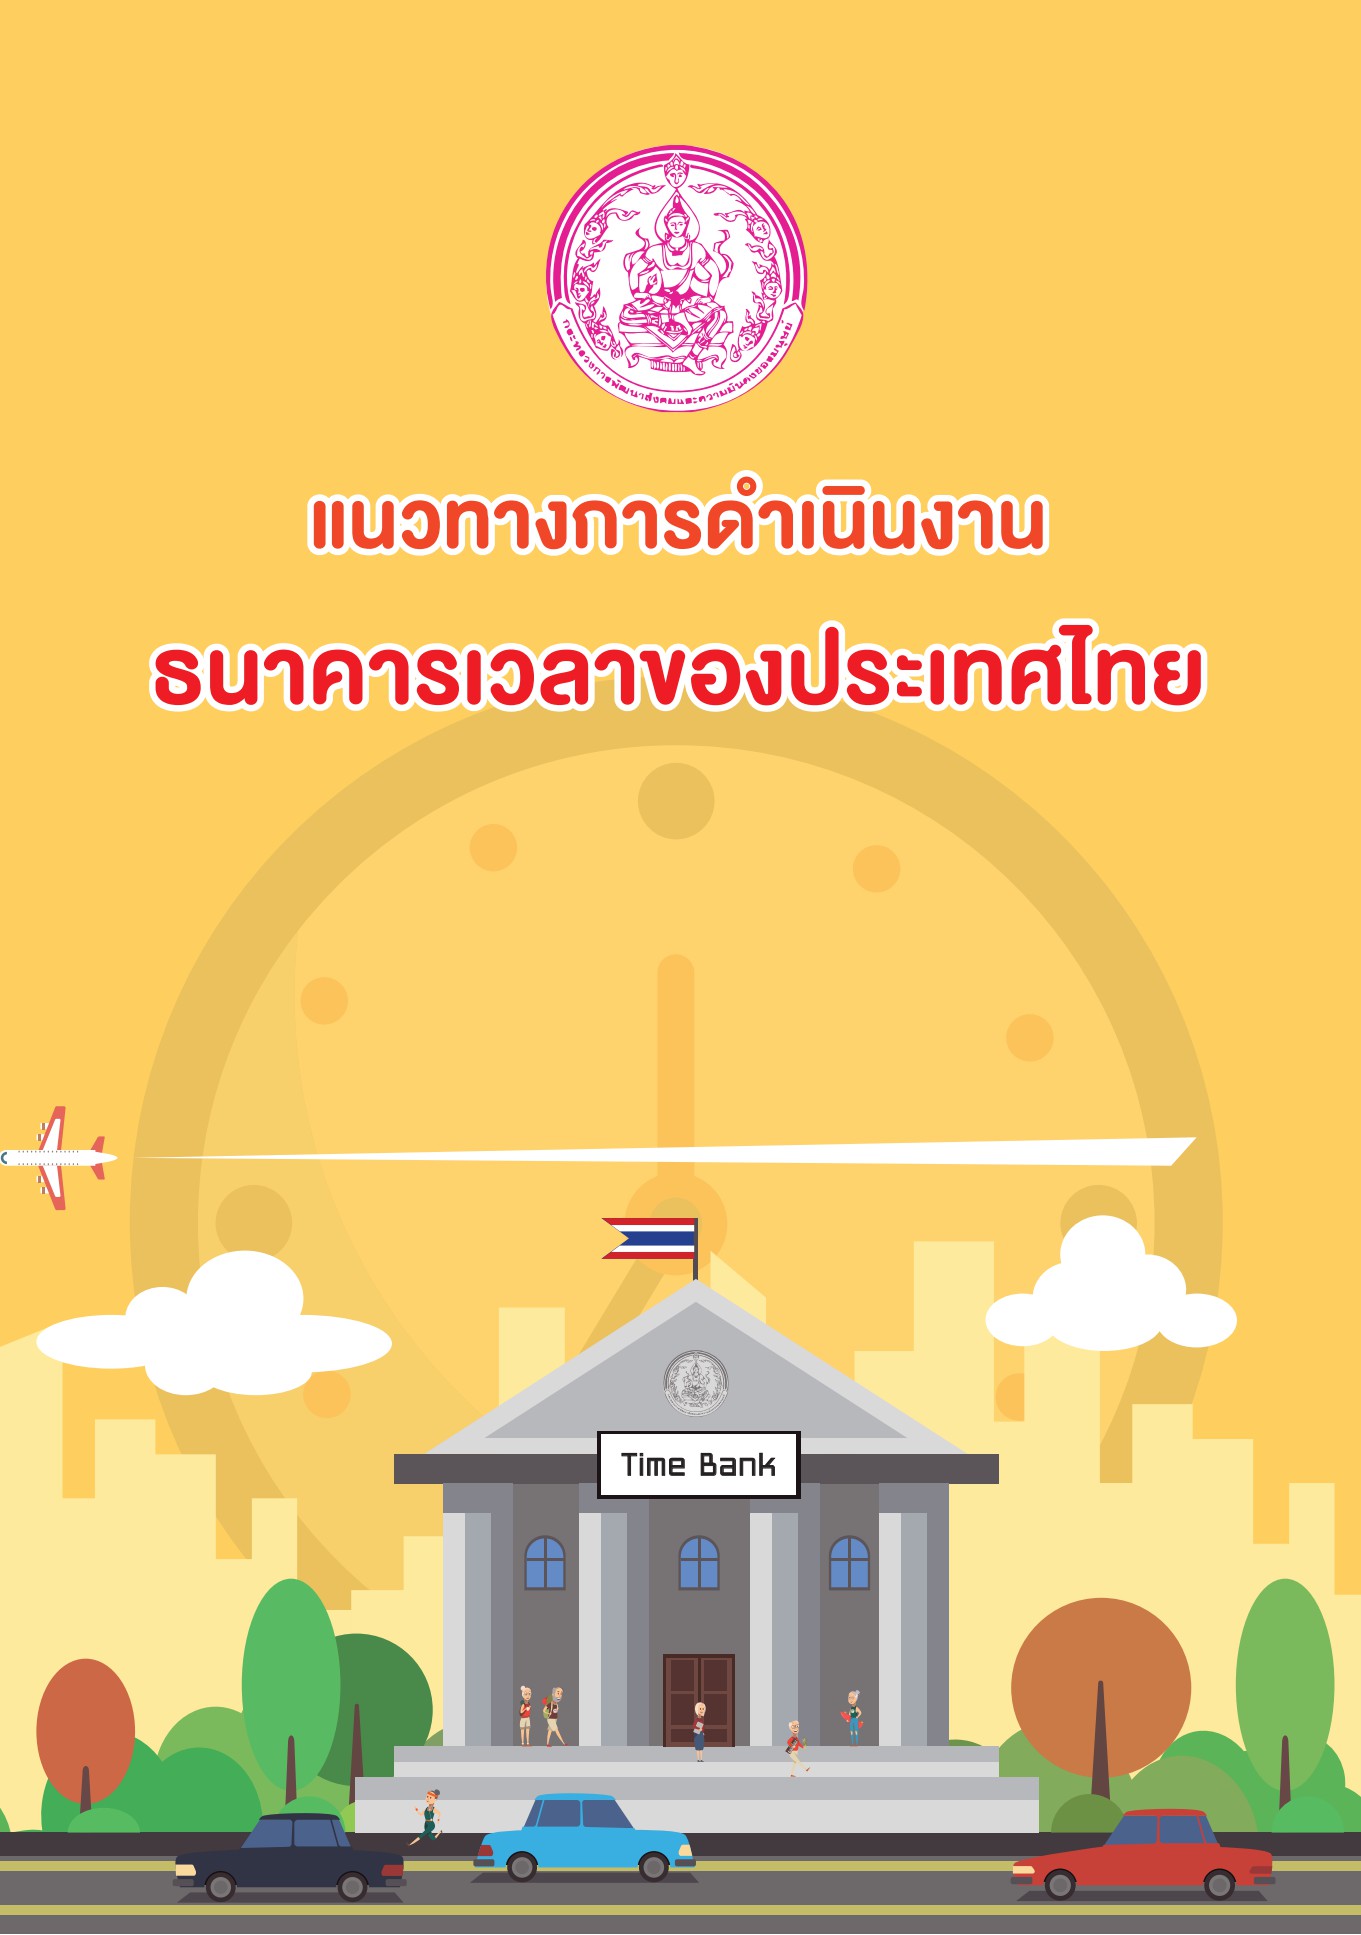 ธนาคารเวลาของประเทศไทย